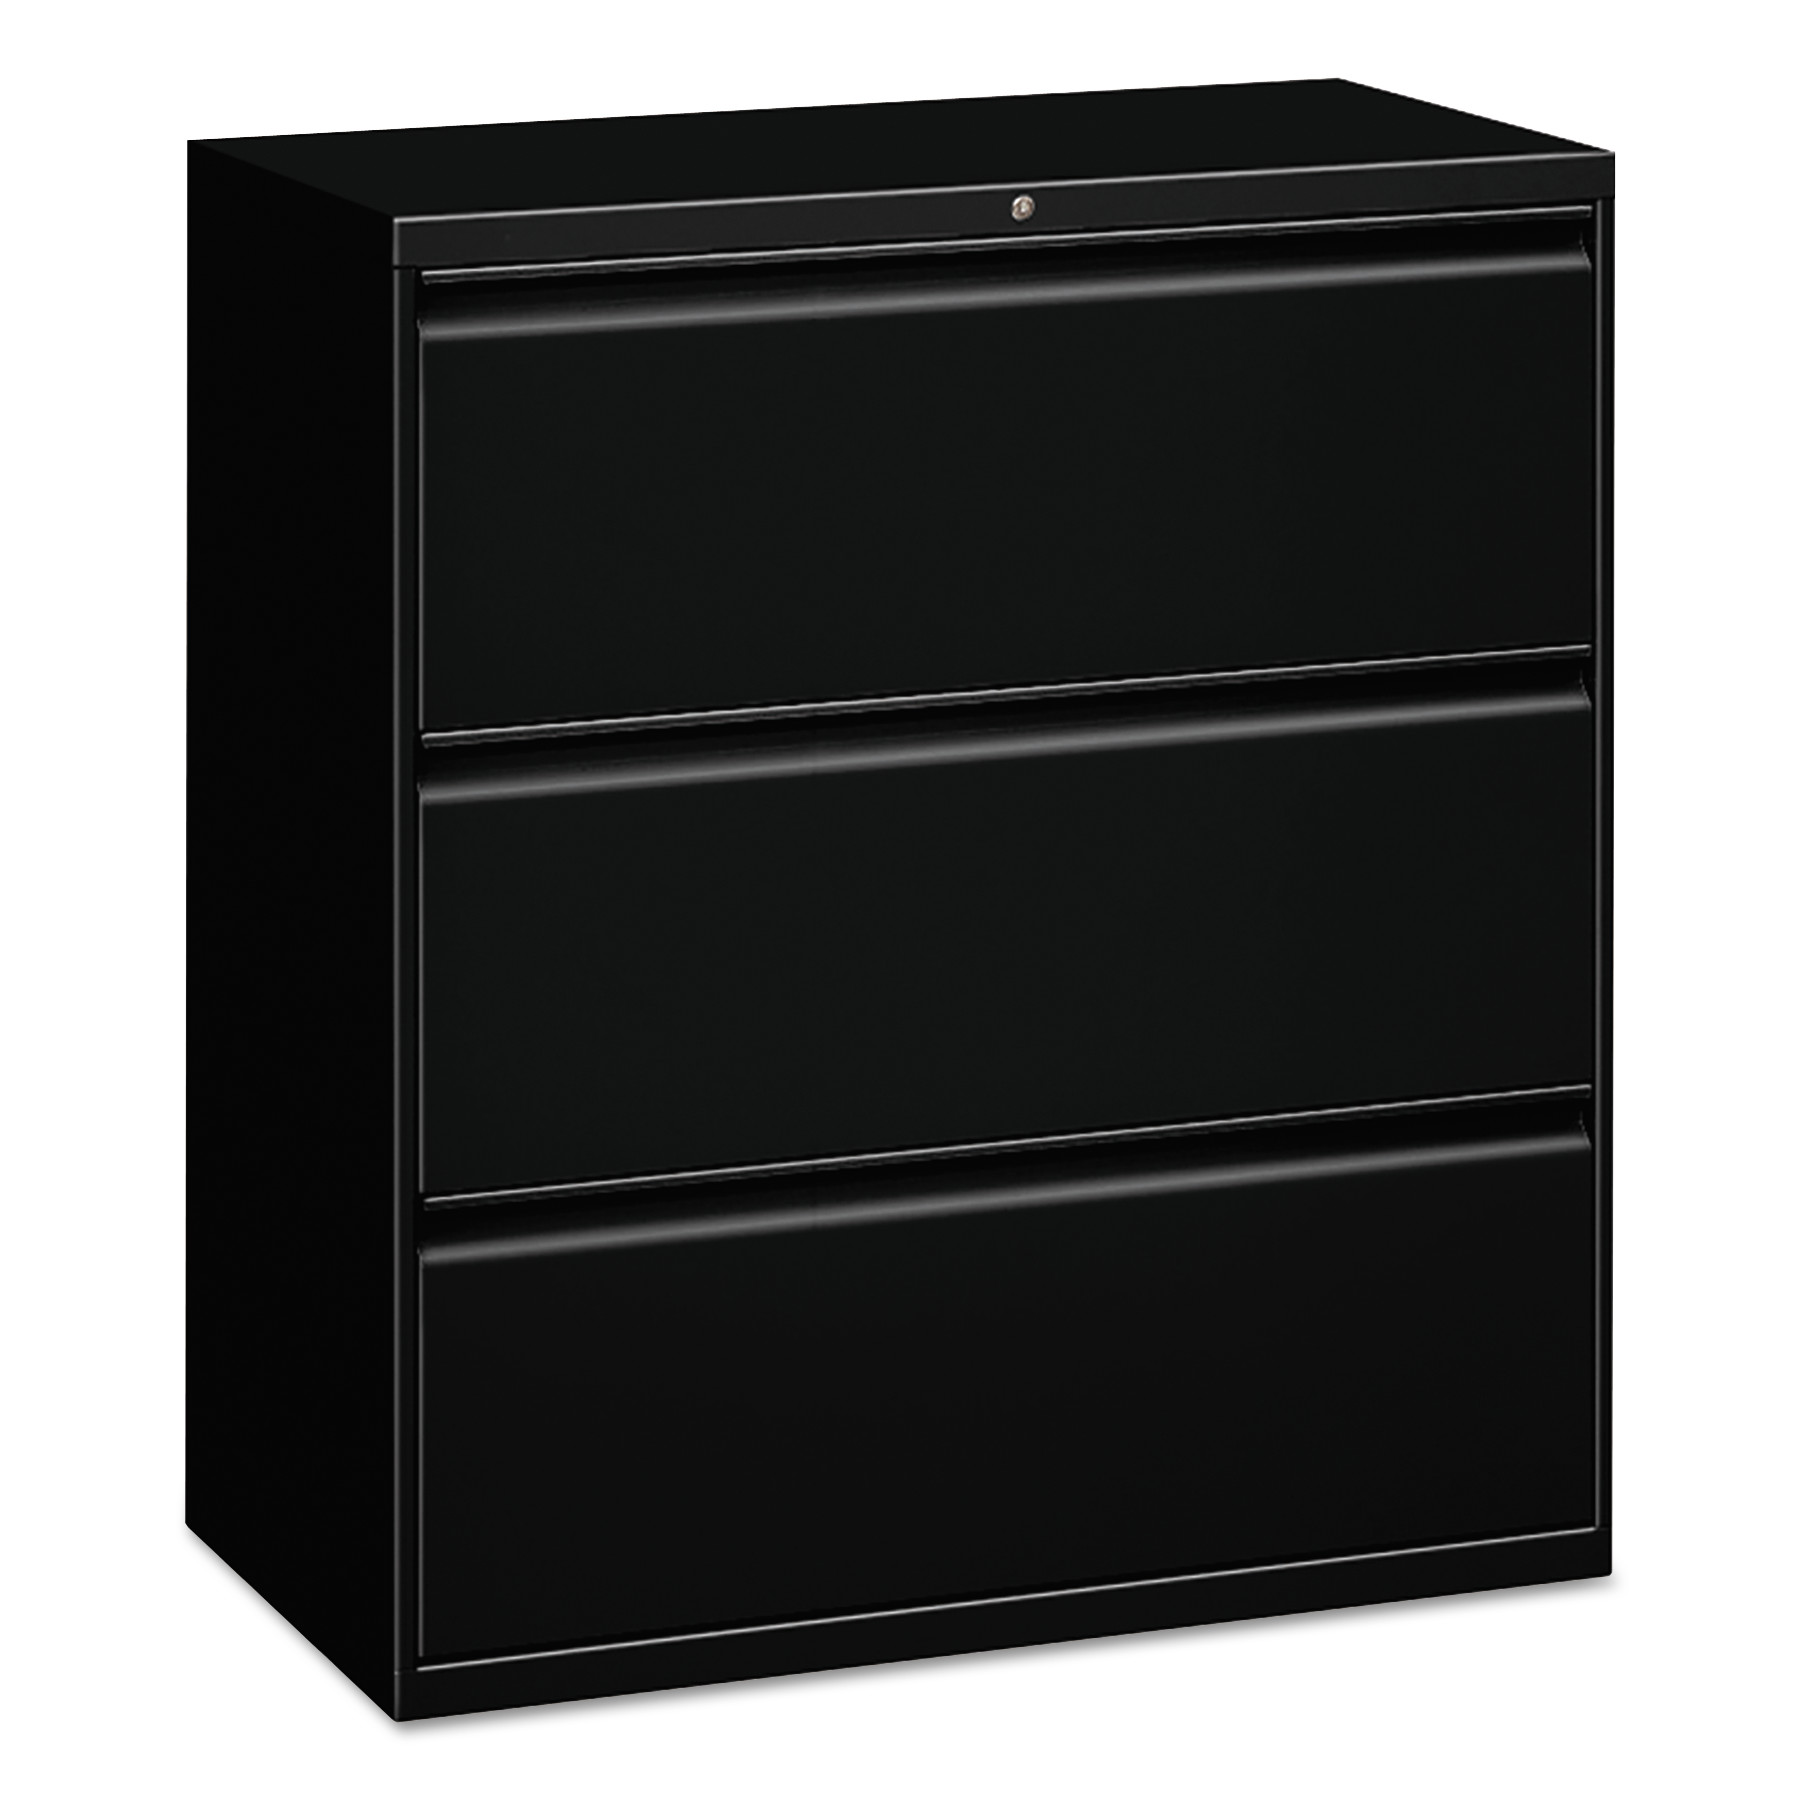  Alera ALELF3041BL Three-Drawer Lateral File Cabinet, 30w x 18d x 39.5h, Black (ALELF3041BL) 